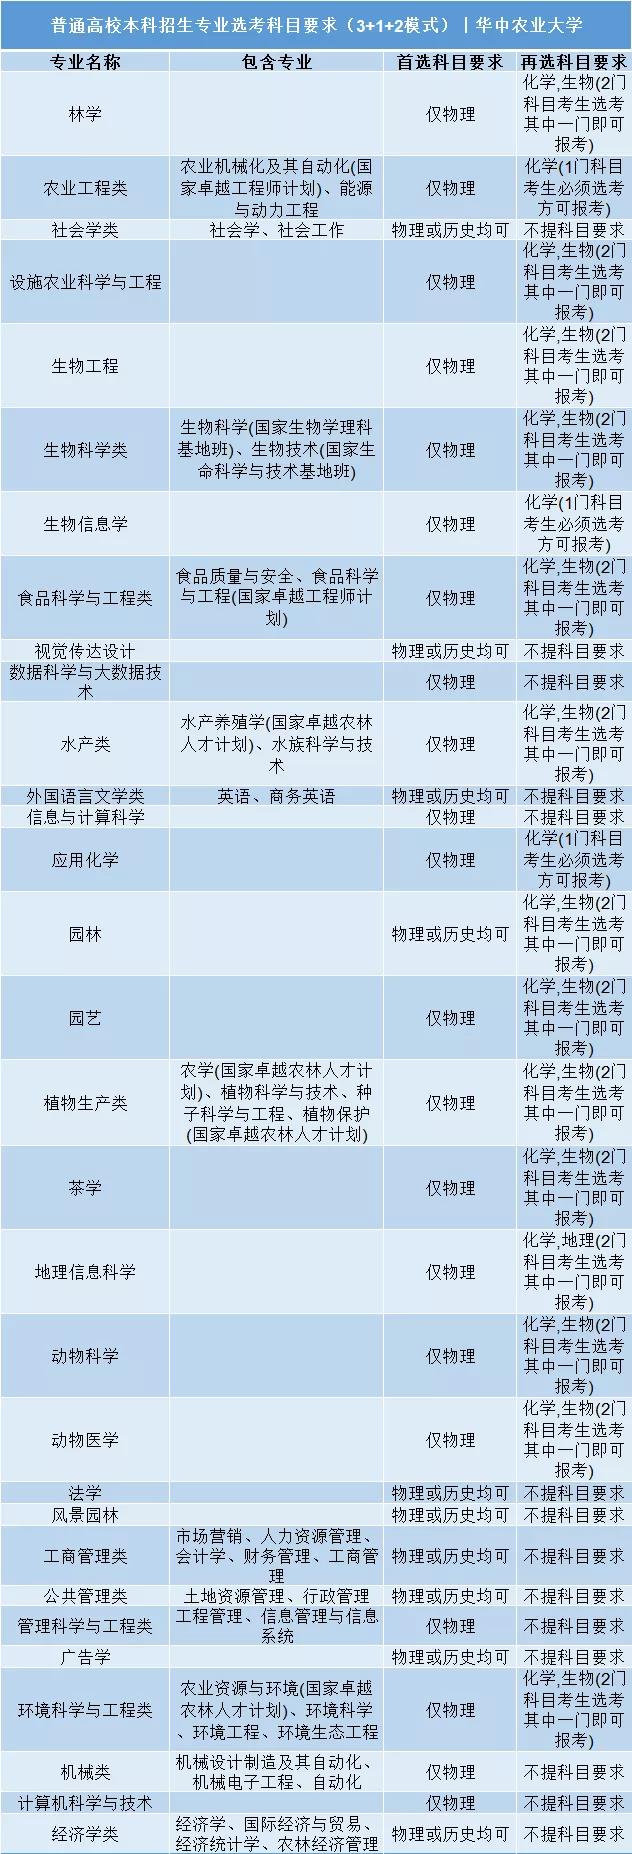 華中農業大學普通高校本科招生專業選考科目要求3+1+2模式